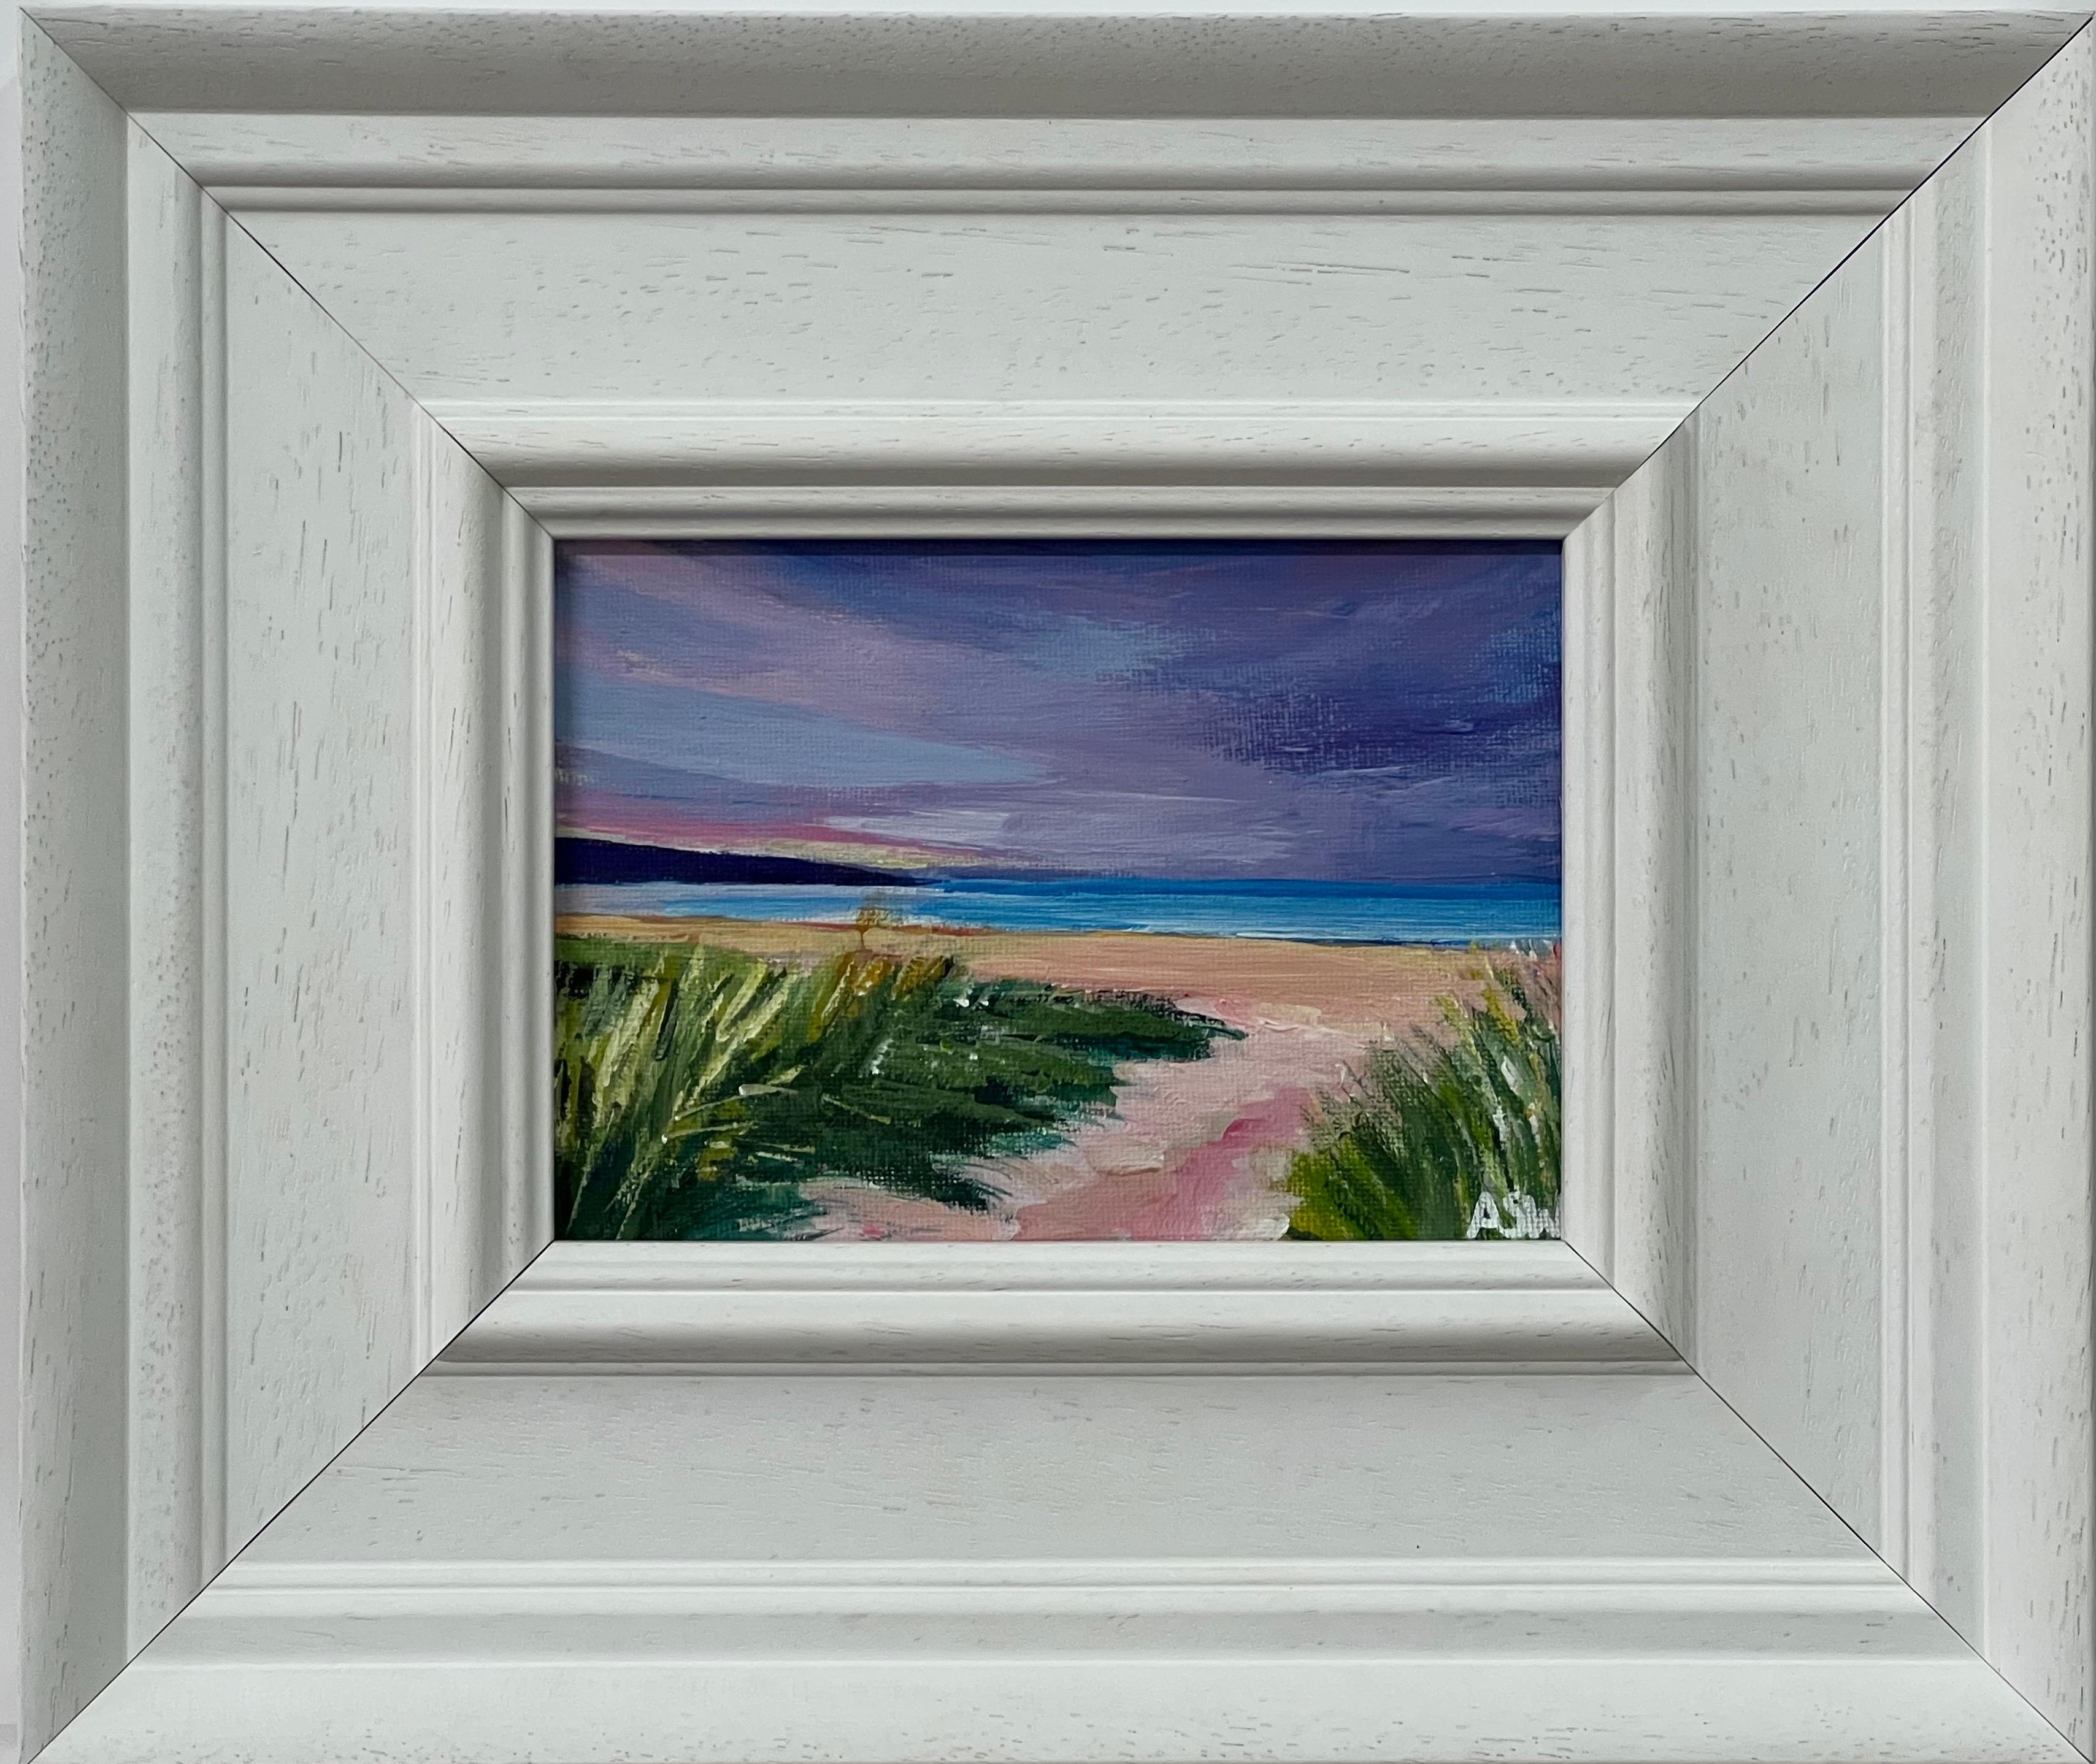 Abstract Painting Angela Wakefield - Paysage de plage miniature de la côte est des Highlands écossais par un artiste britannique